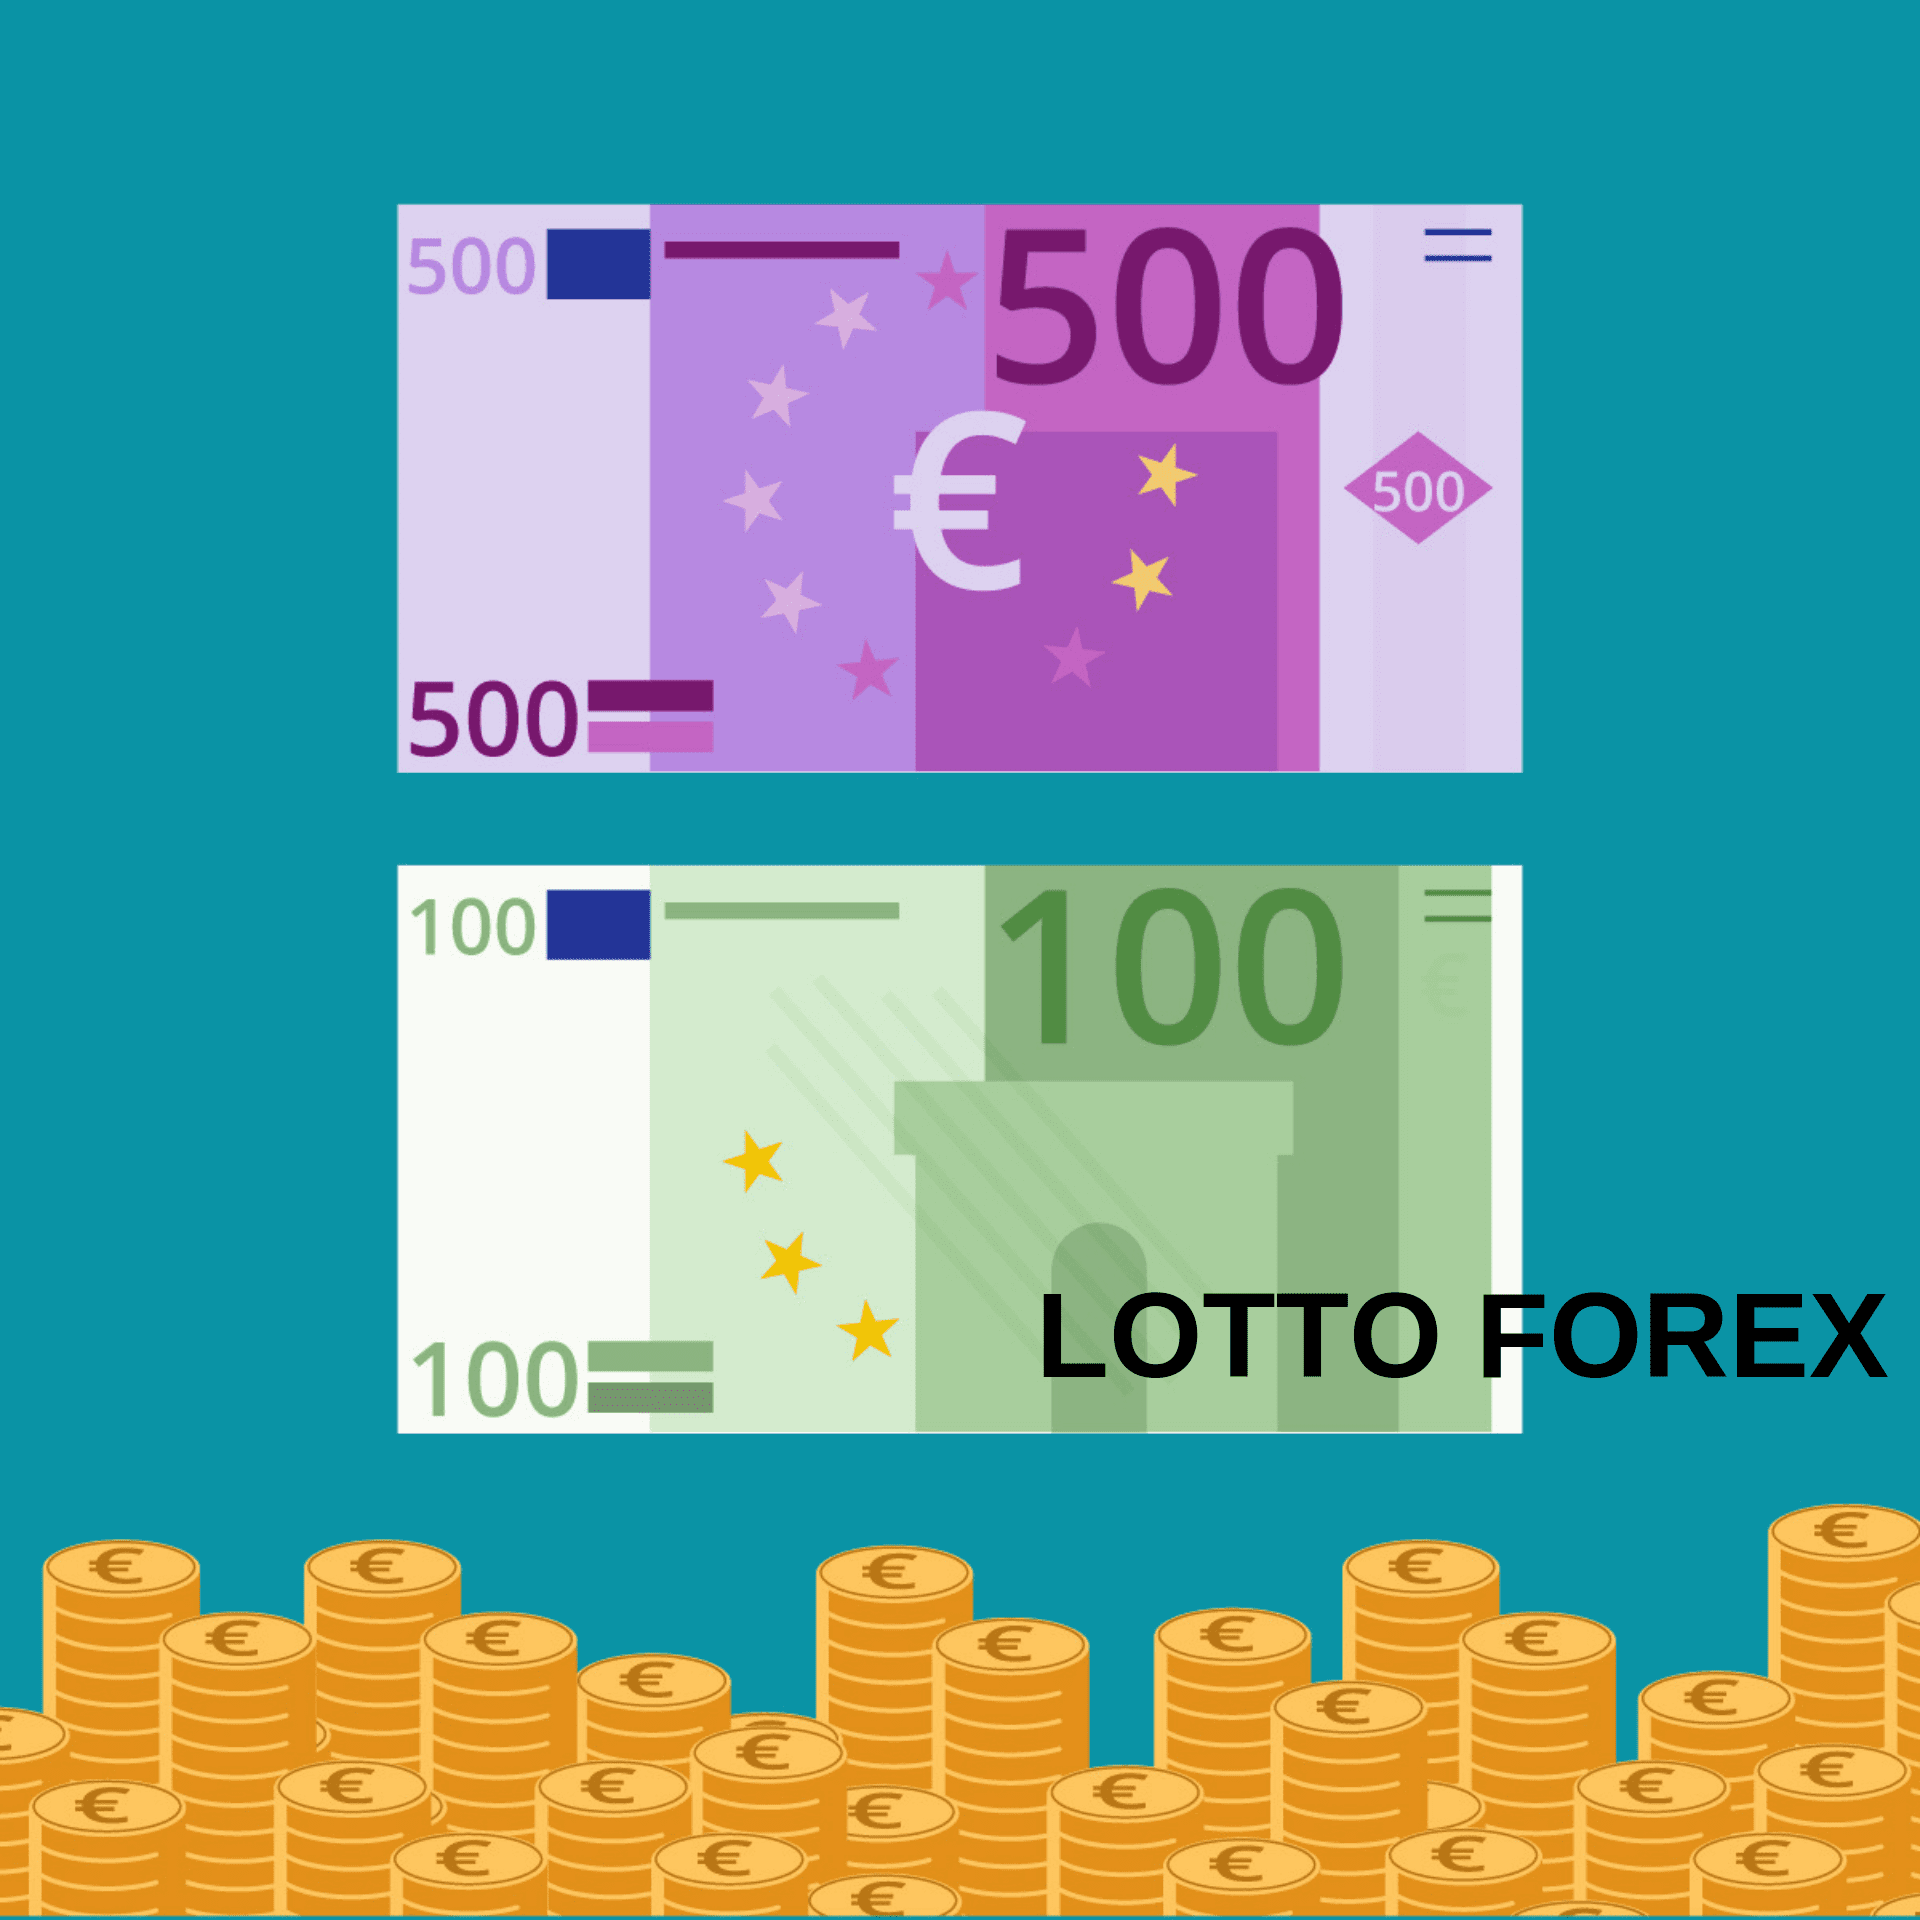 Lotto Forex che cos'è